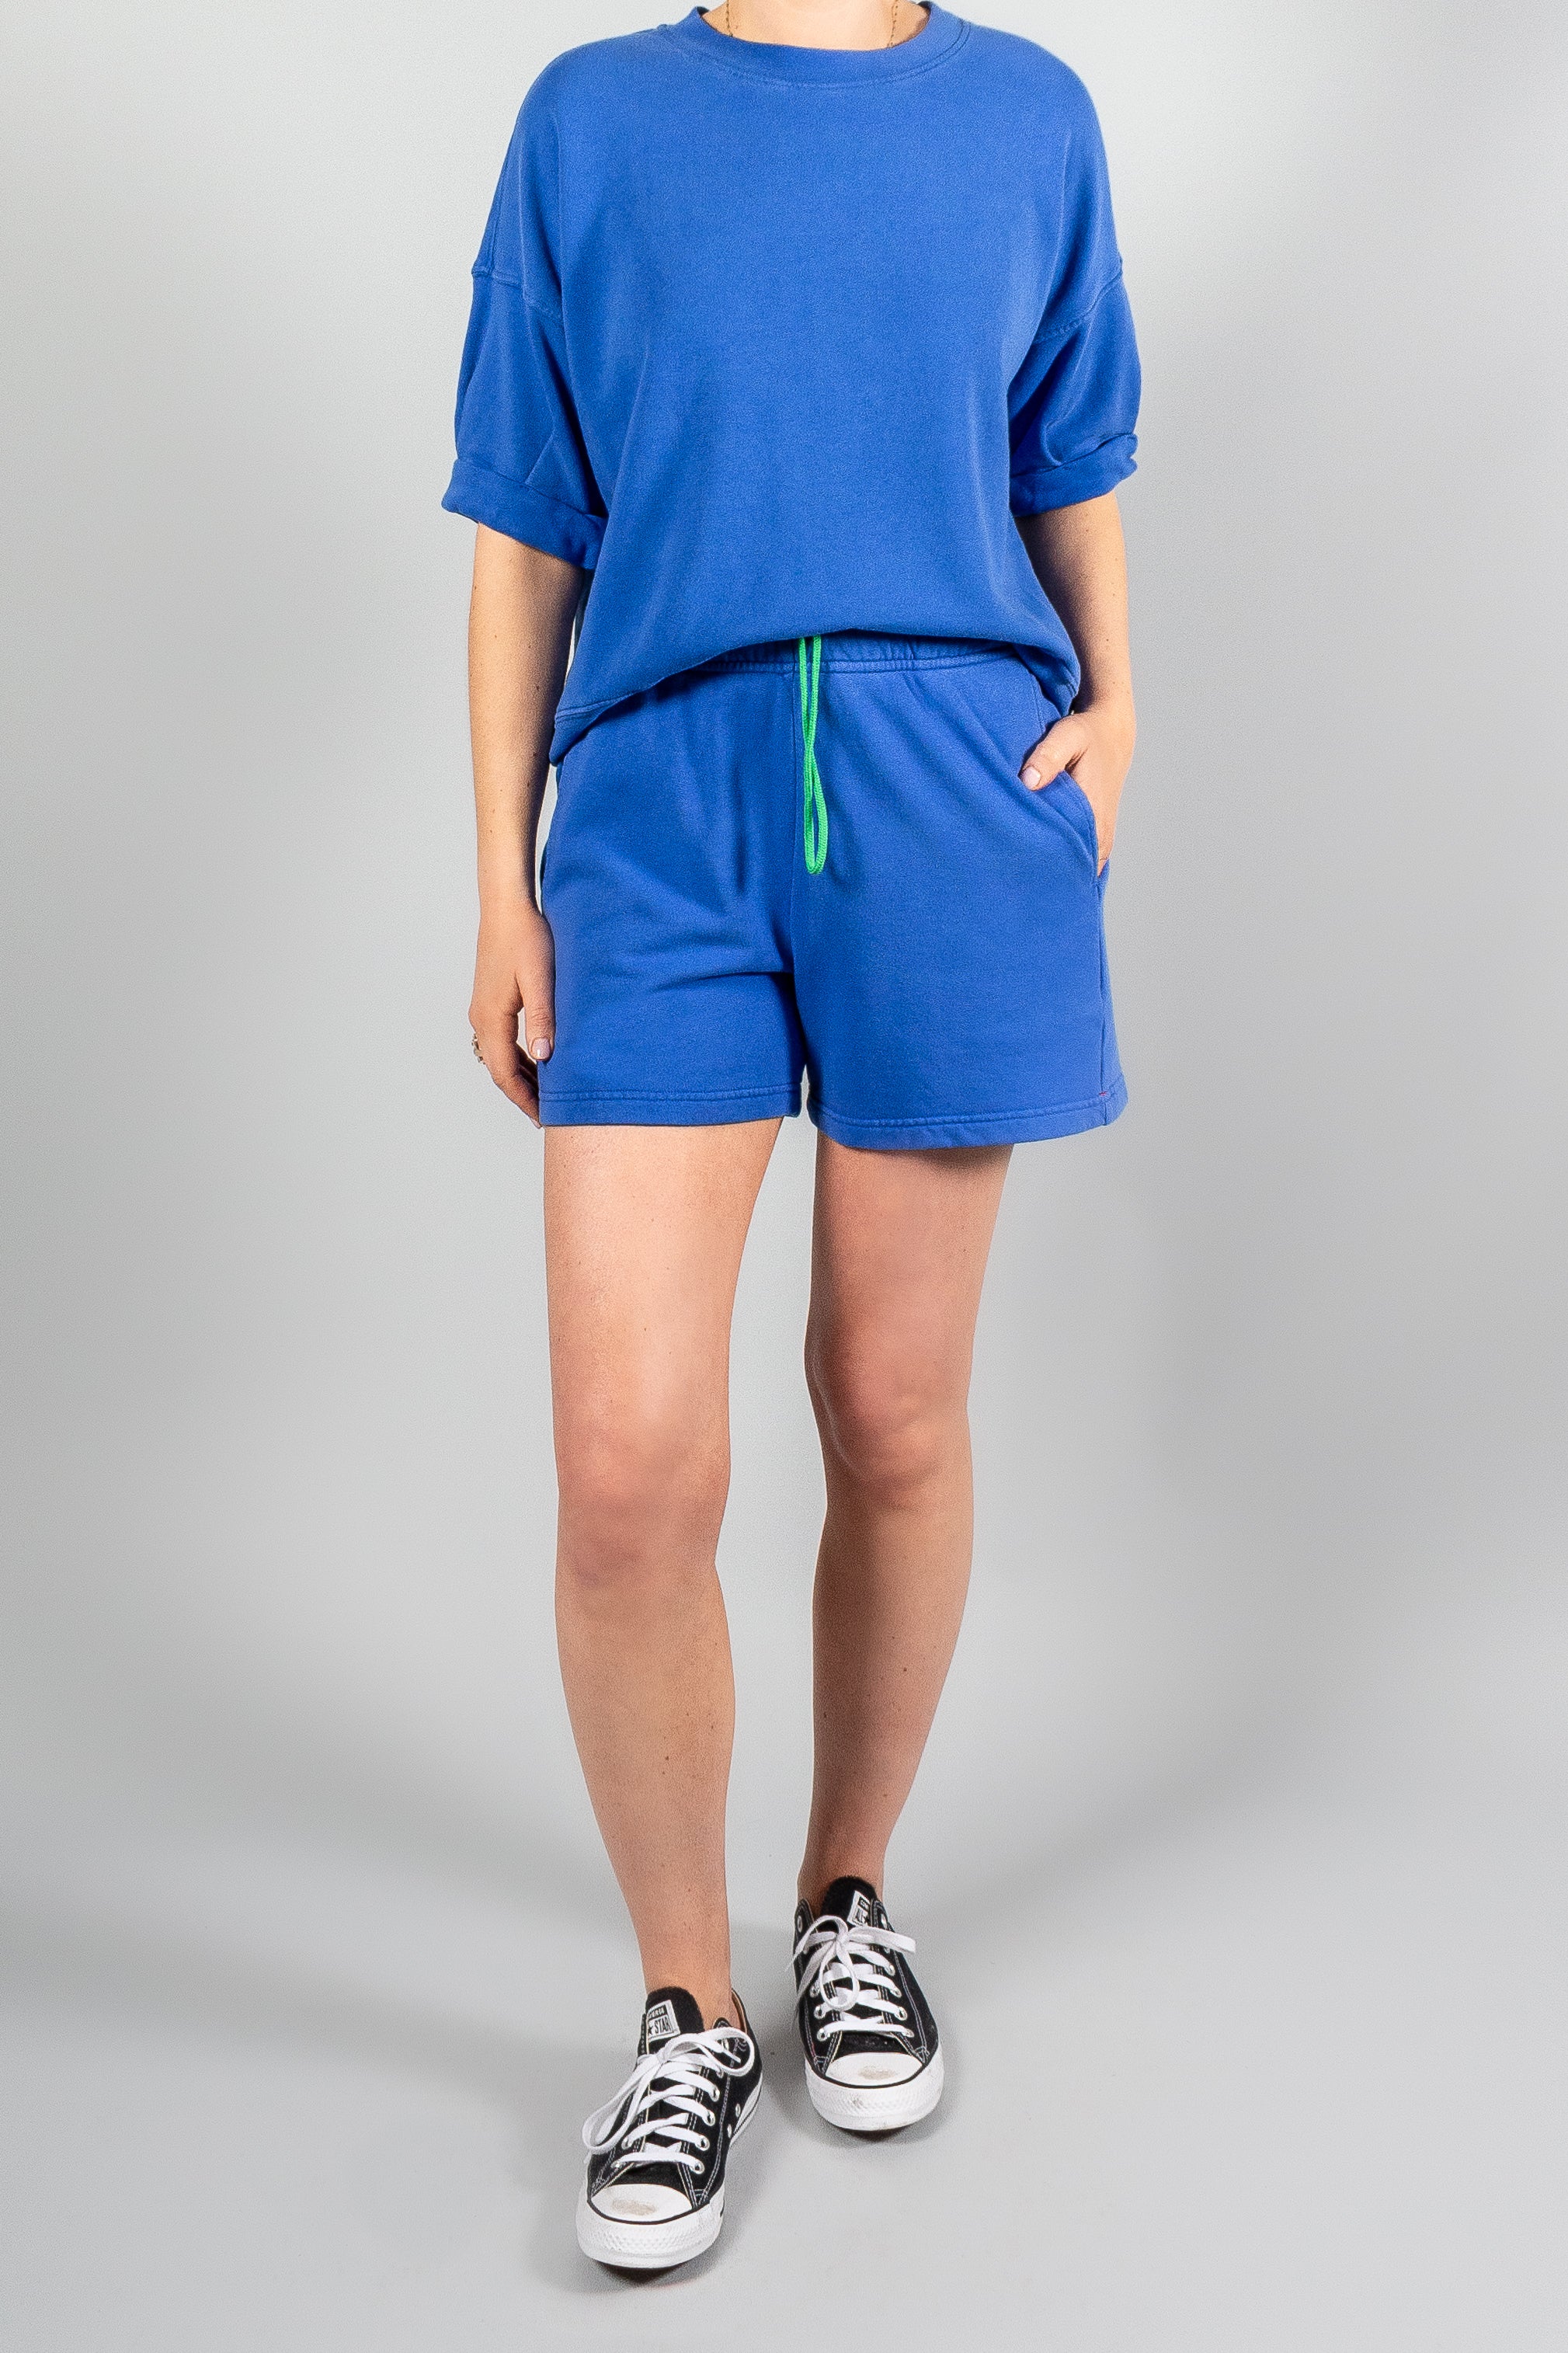 Xirena Trixie Sweatshirt-Tops-Misch-Boutique-Vancouver-Canada-misch.ca